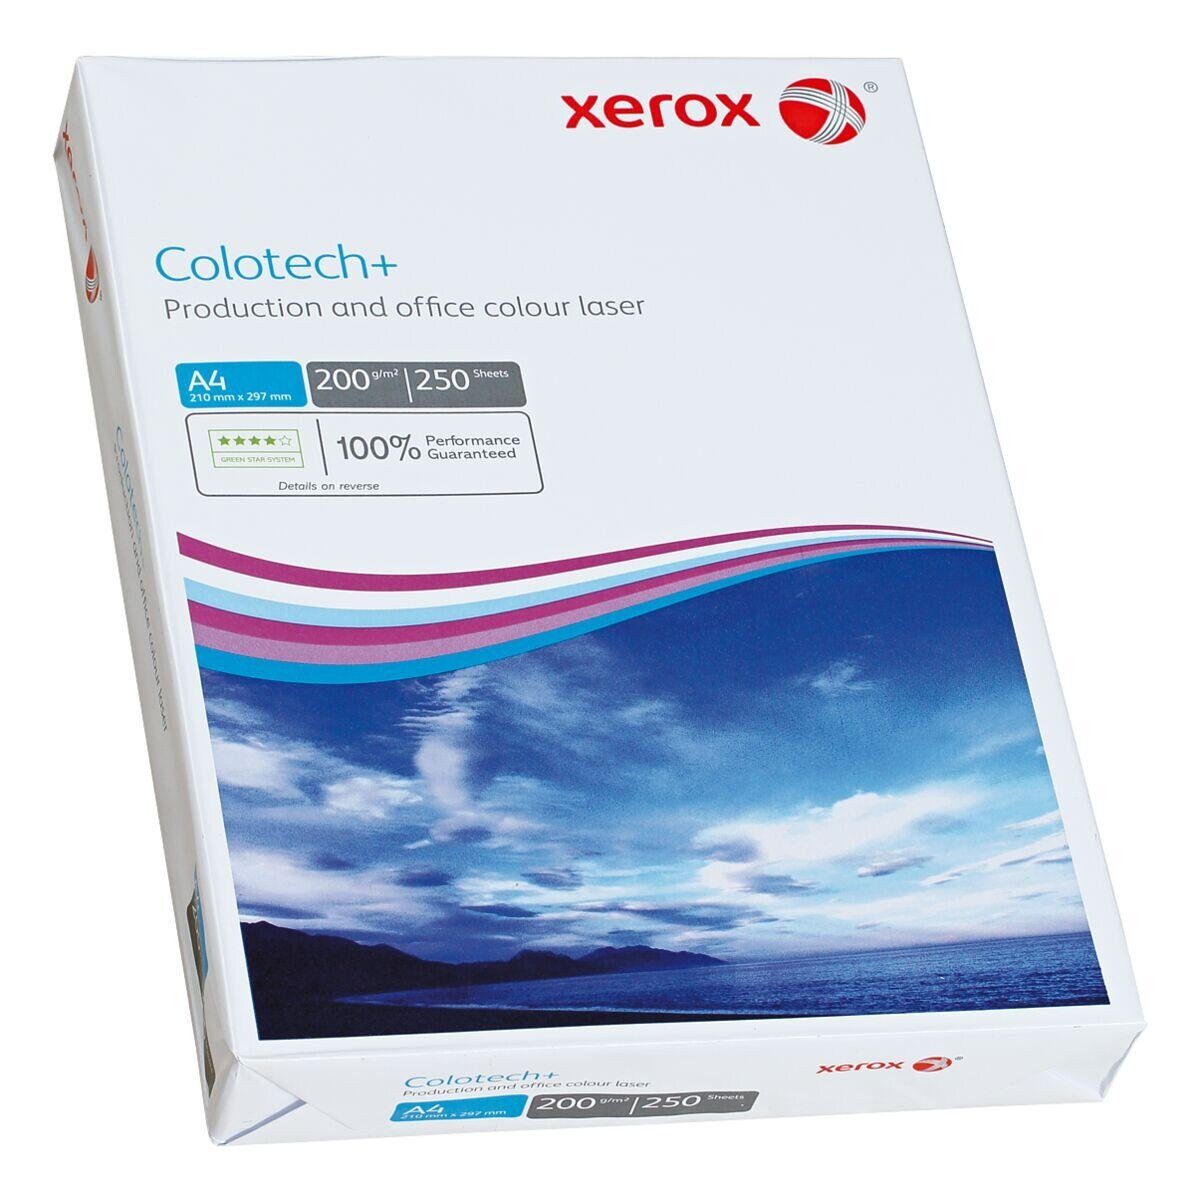 DIN Colotech+, Farblaser-Druckerpapier Blatt A4, 200 g/m², Xerox 250 Format